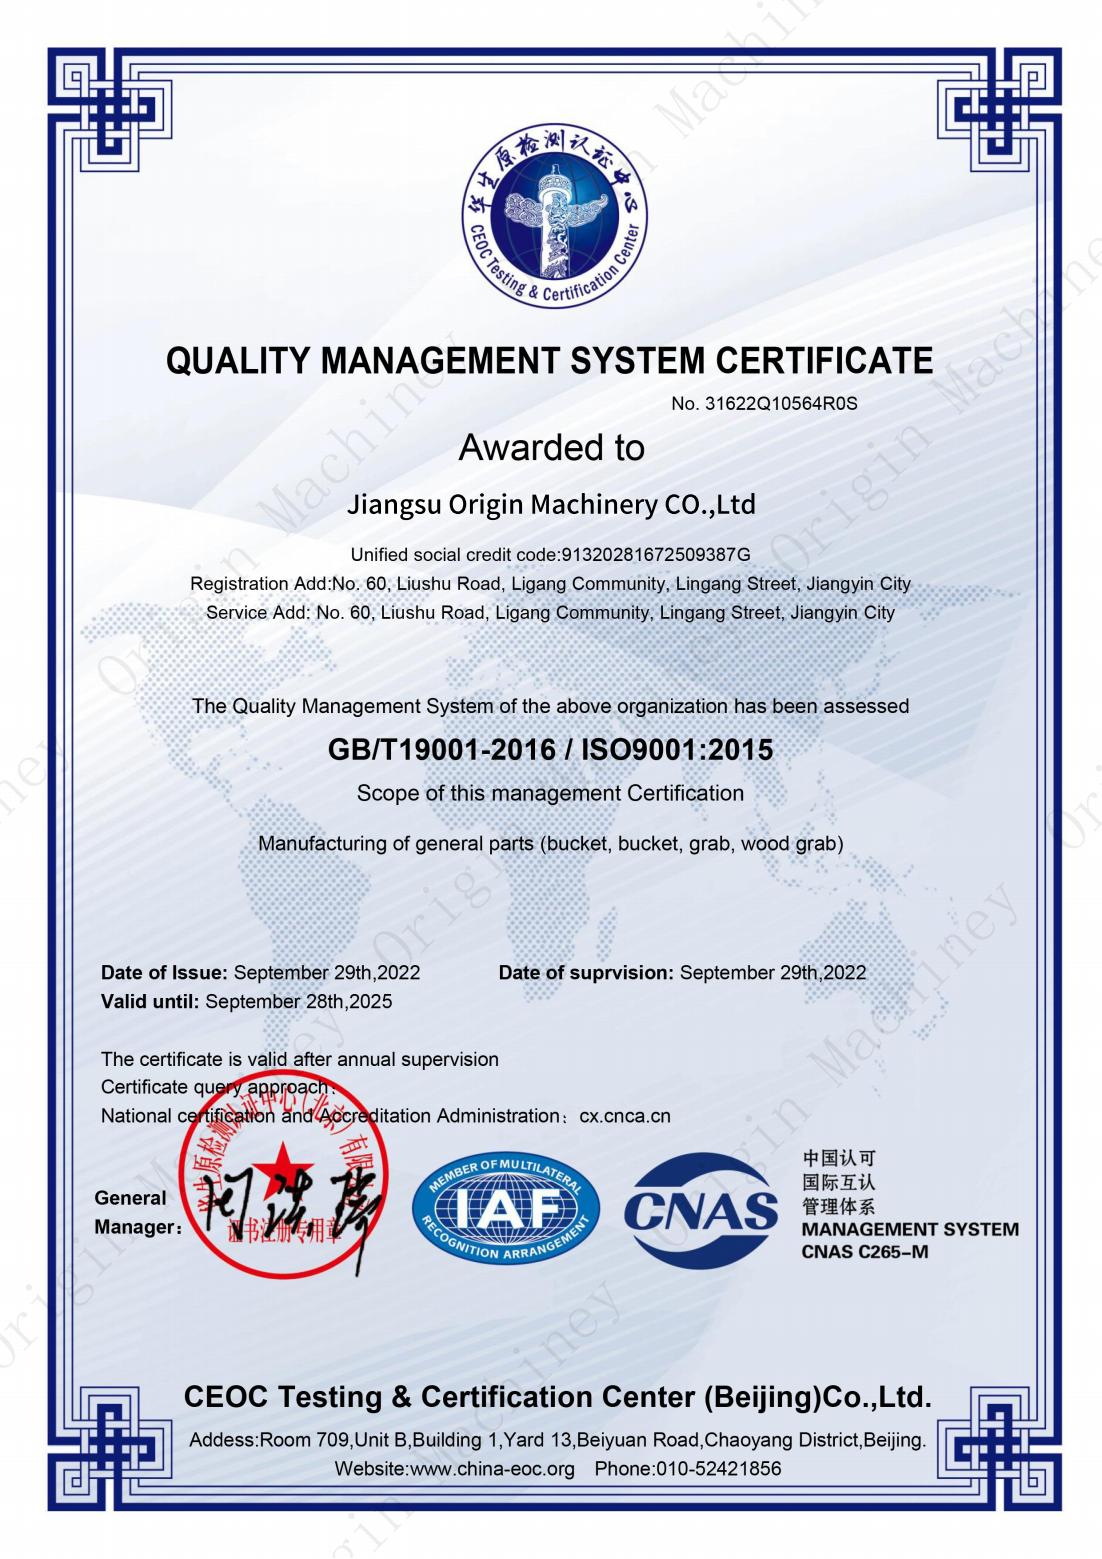 CNAS kvalitātes vadības sistēmas sertifikāts — Origin Machinery(1)_00